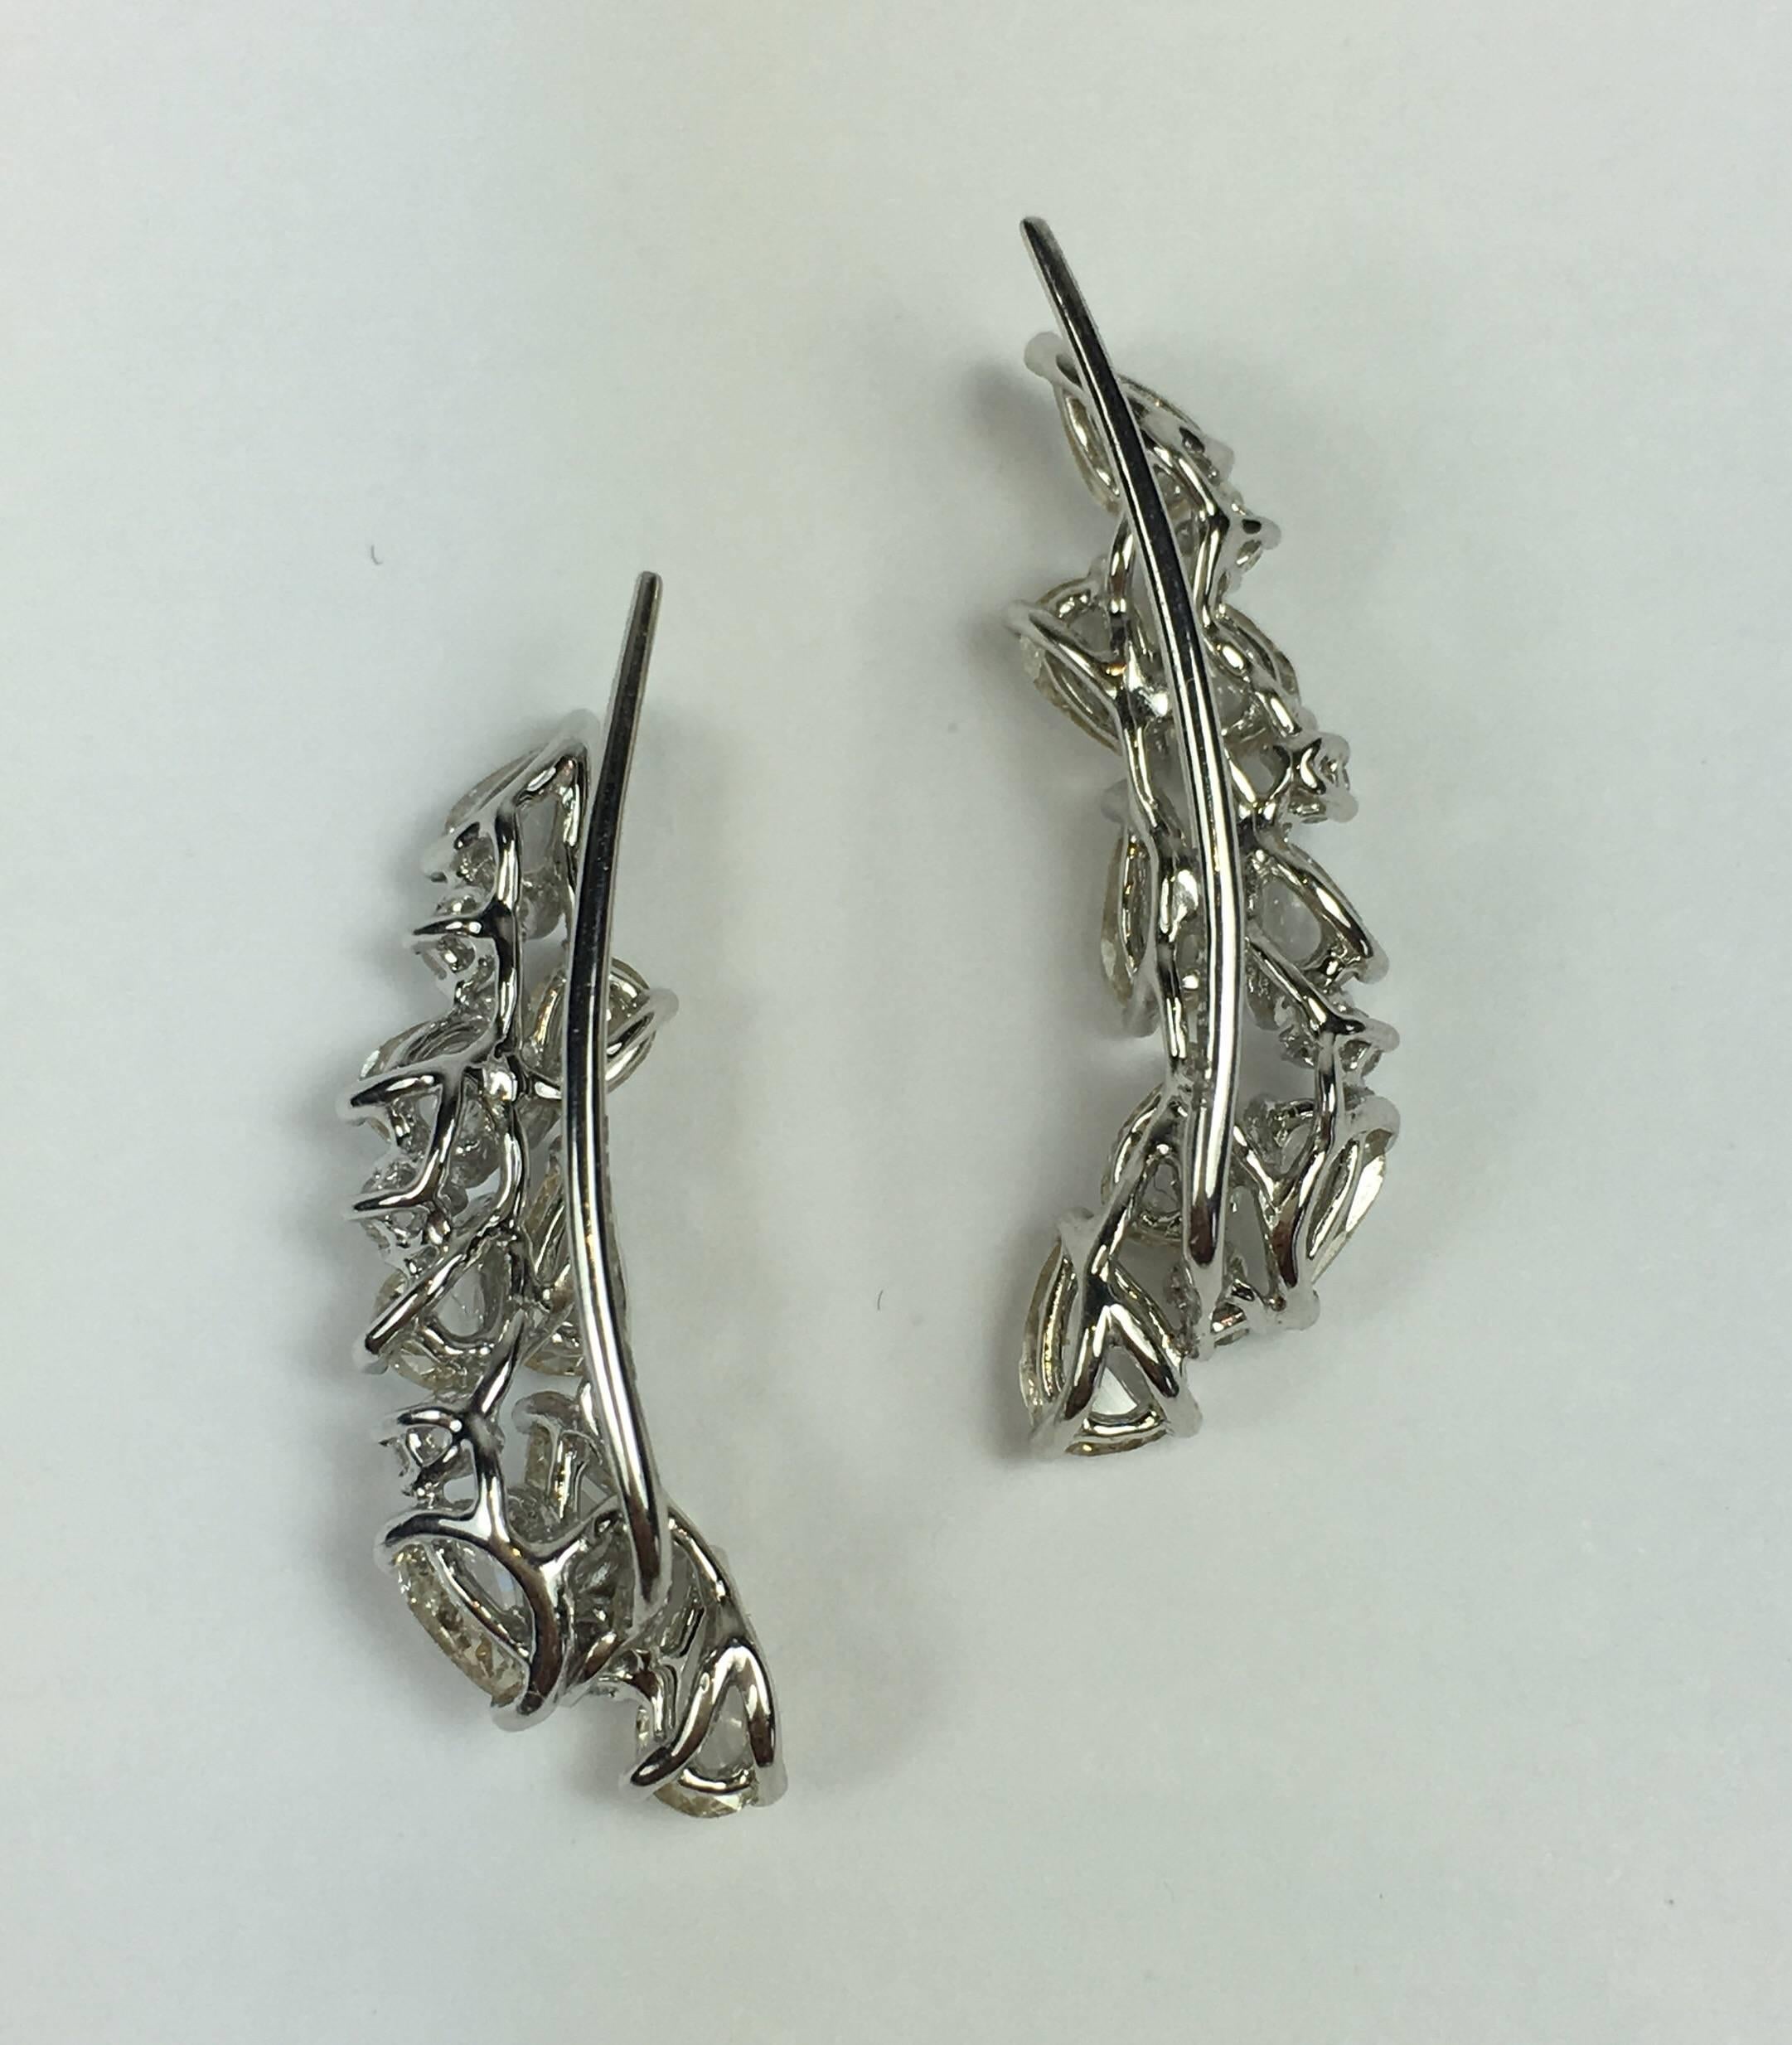 Modern Manpriya B 18 Karat White Gold Rose Cut Diamond Climbers Earrings 